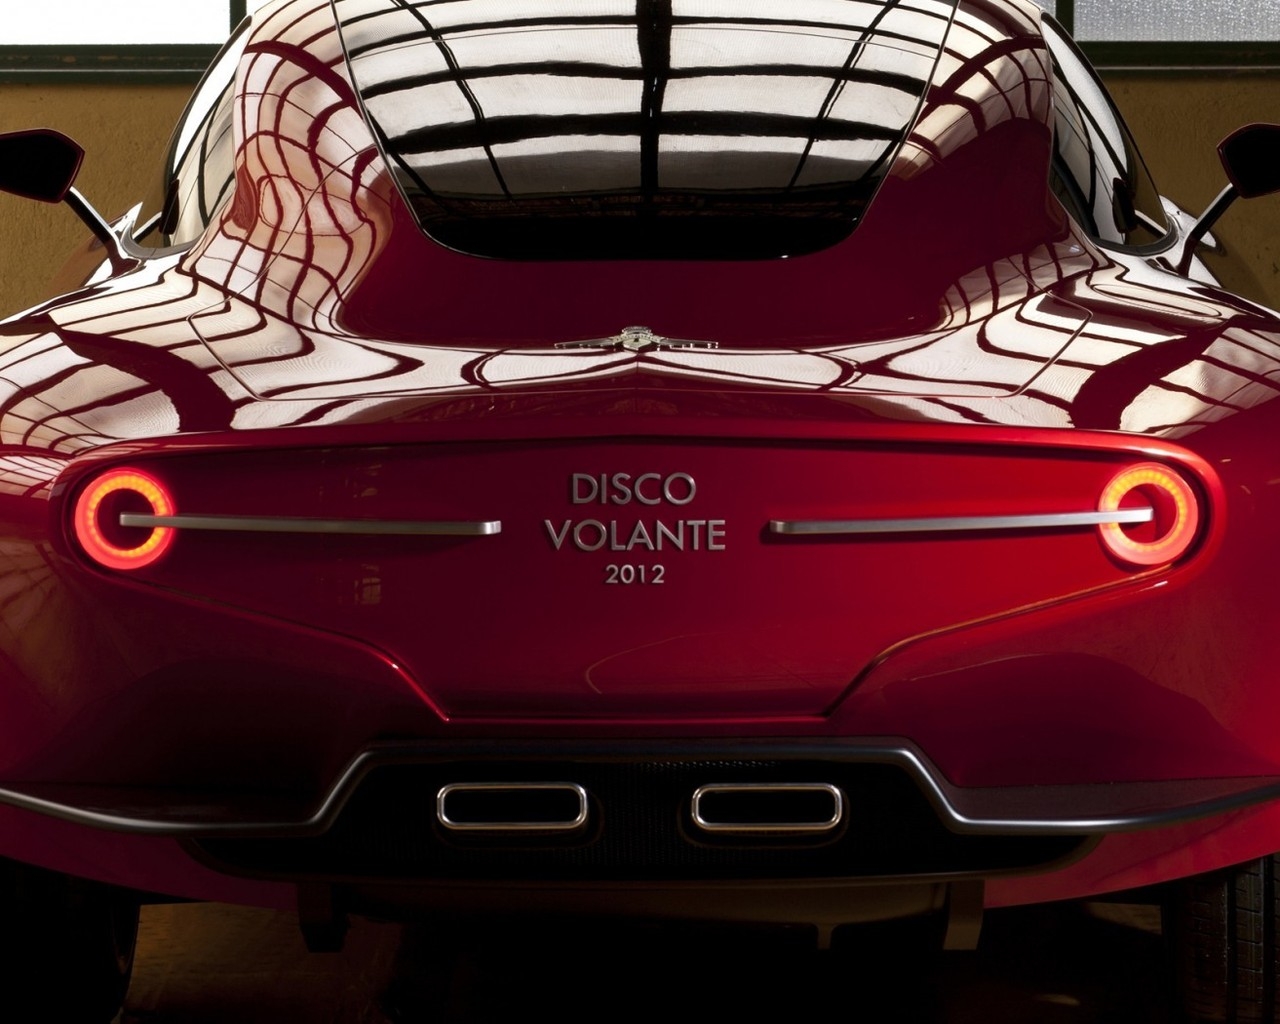 Alfa Romeo Disco Volante 2012 for 1280 x 1024 resolution